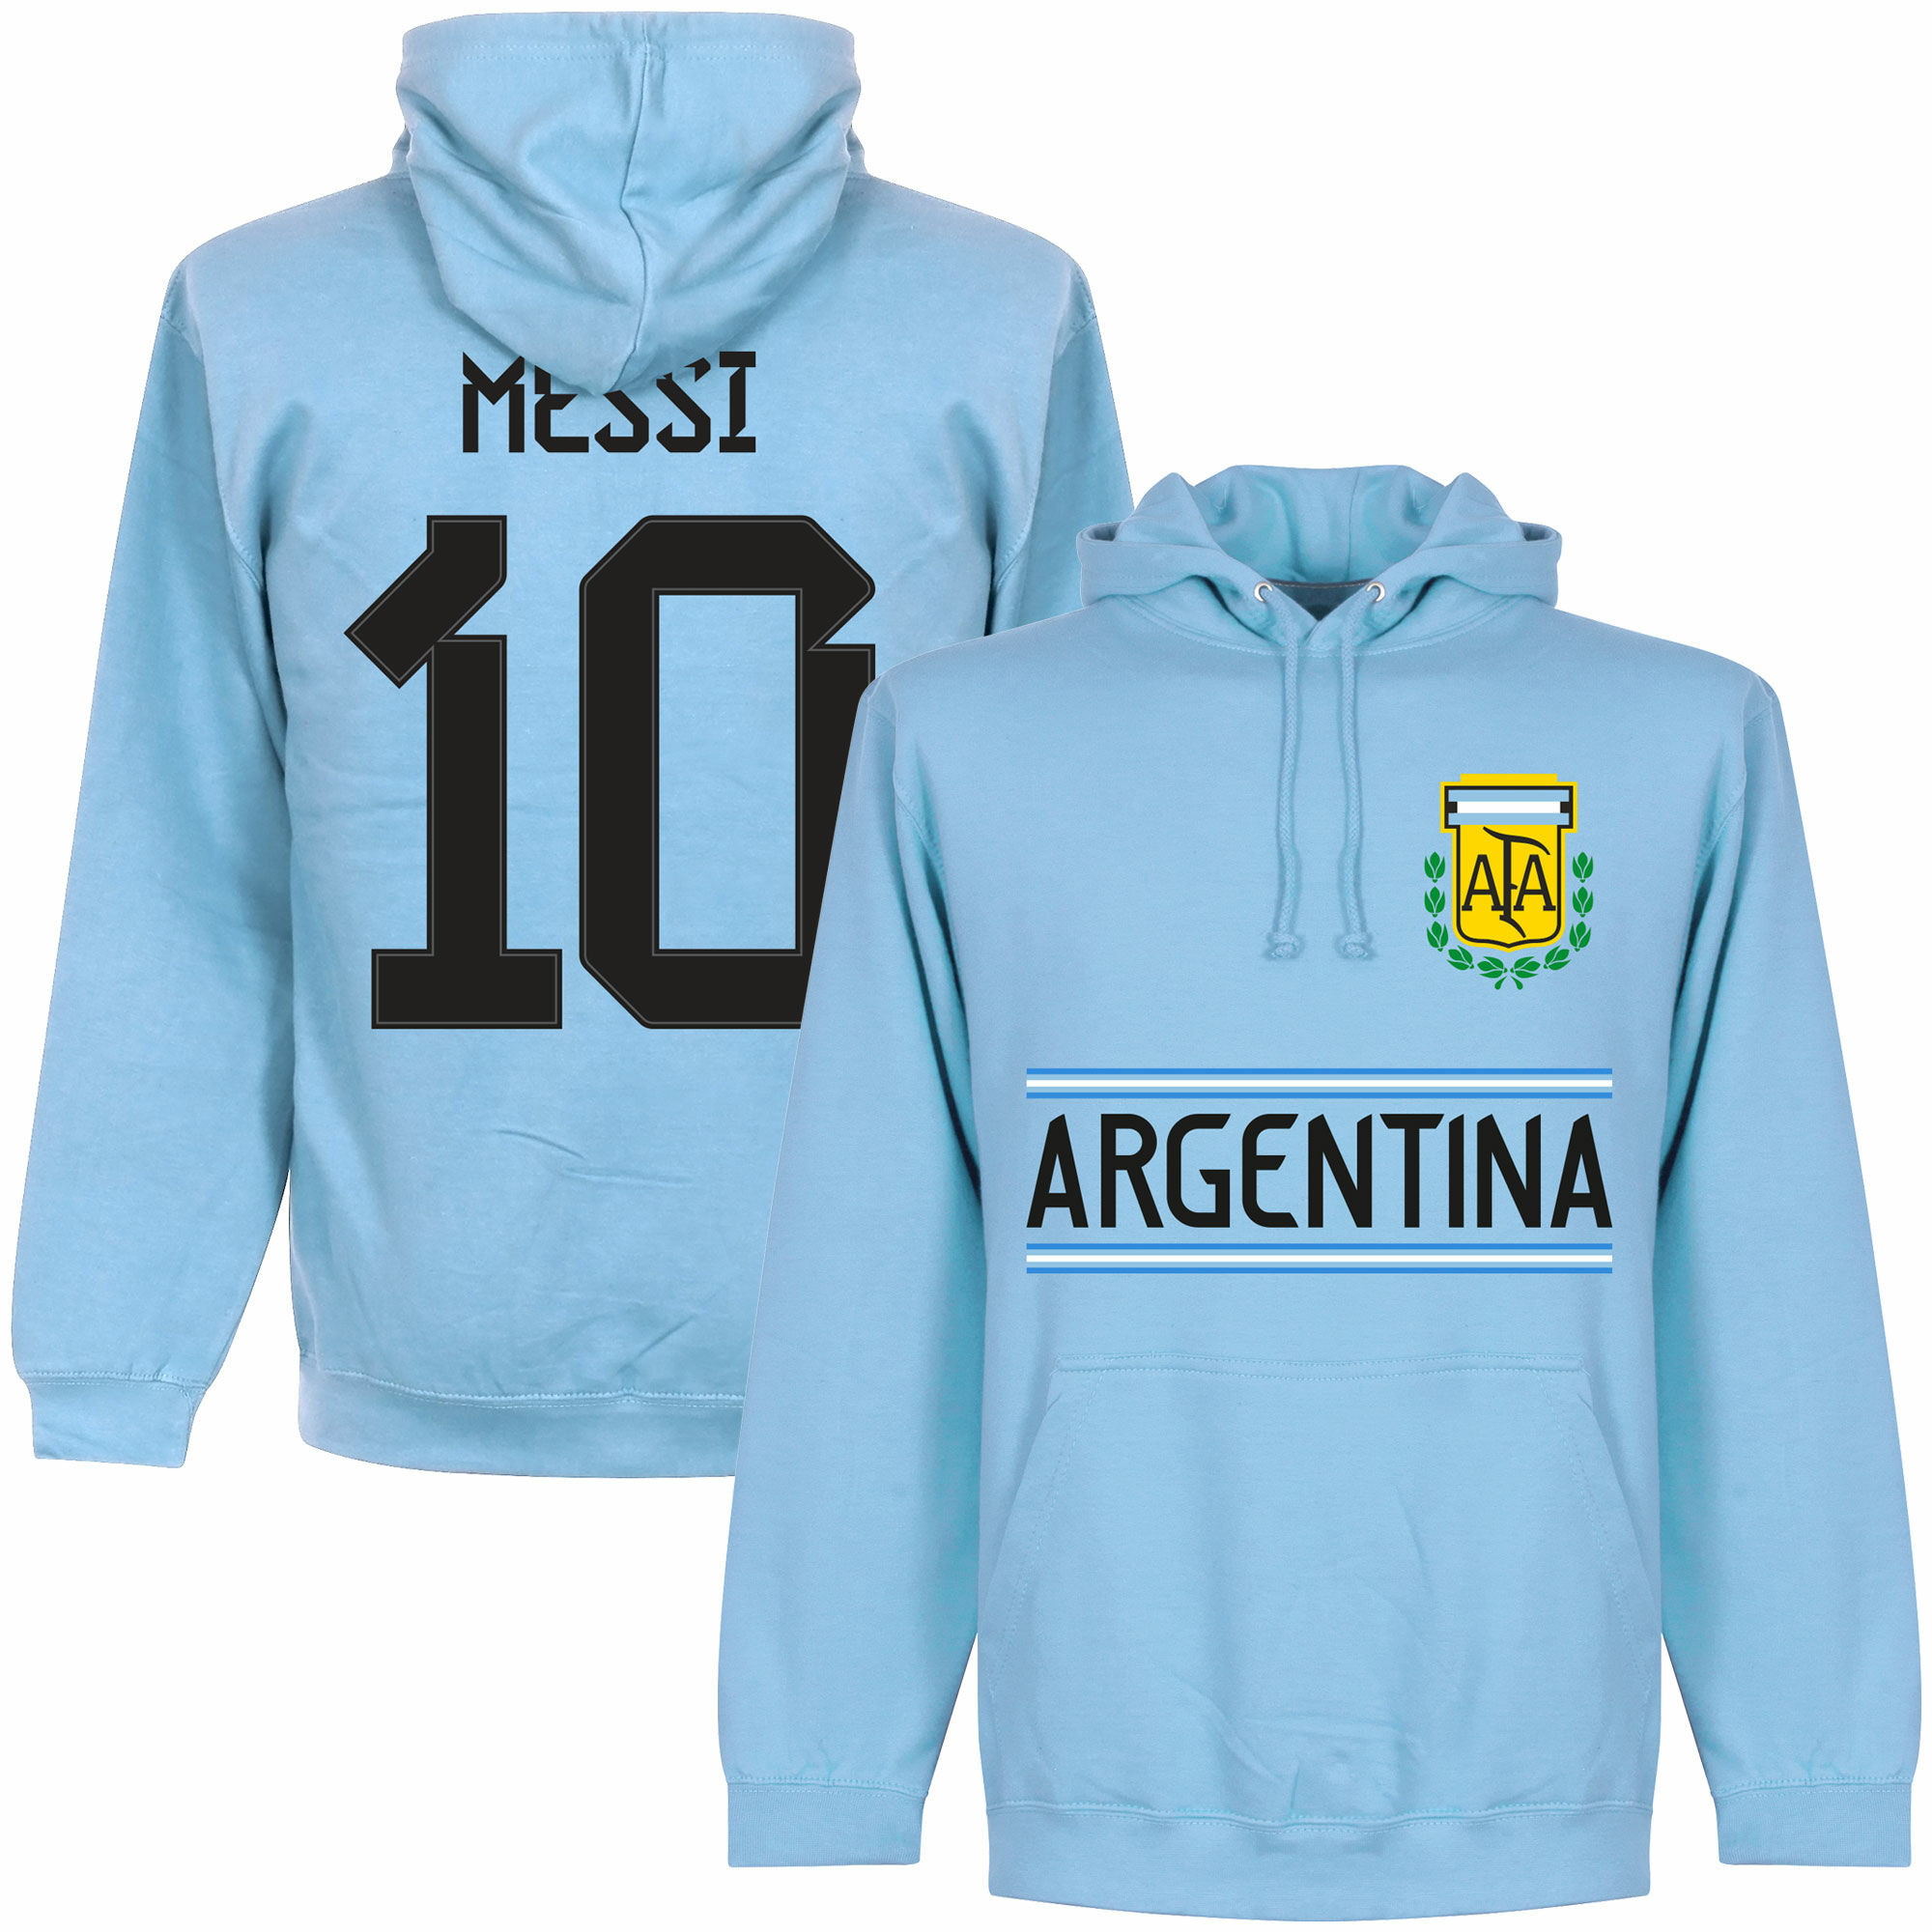 Argentina - Mikina s kapucí - modrá, číslo 10, Lionel Messi